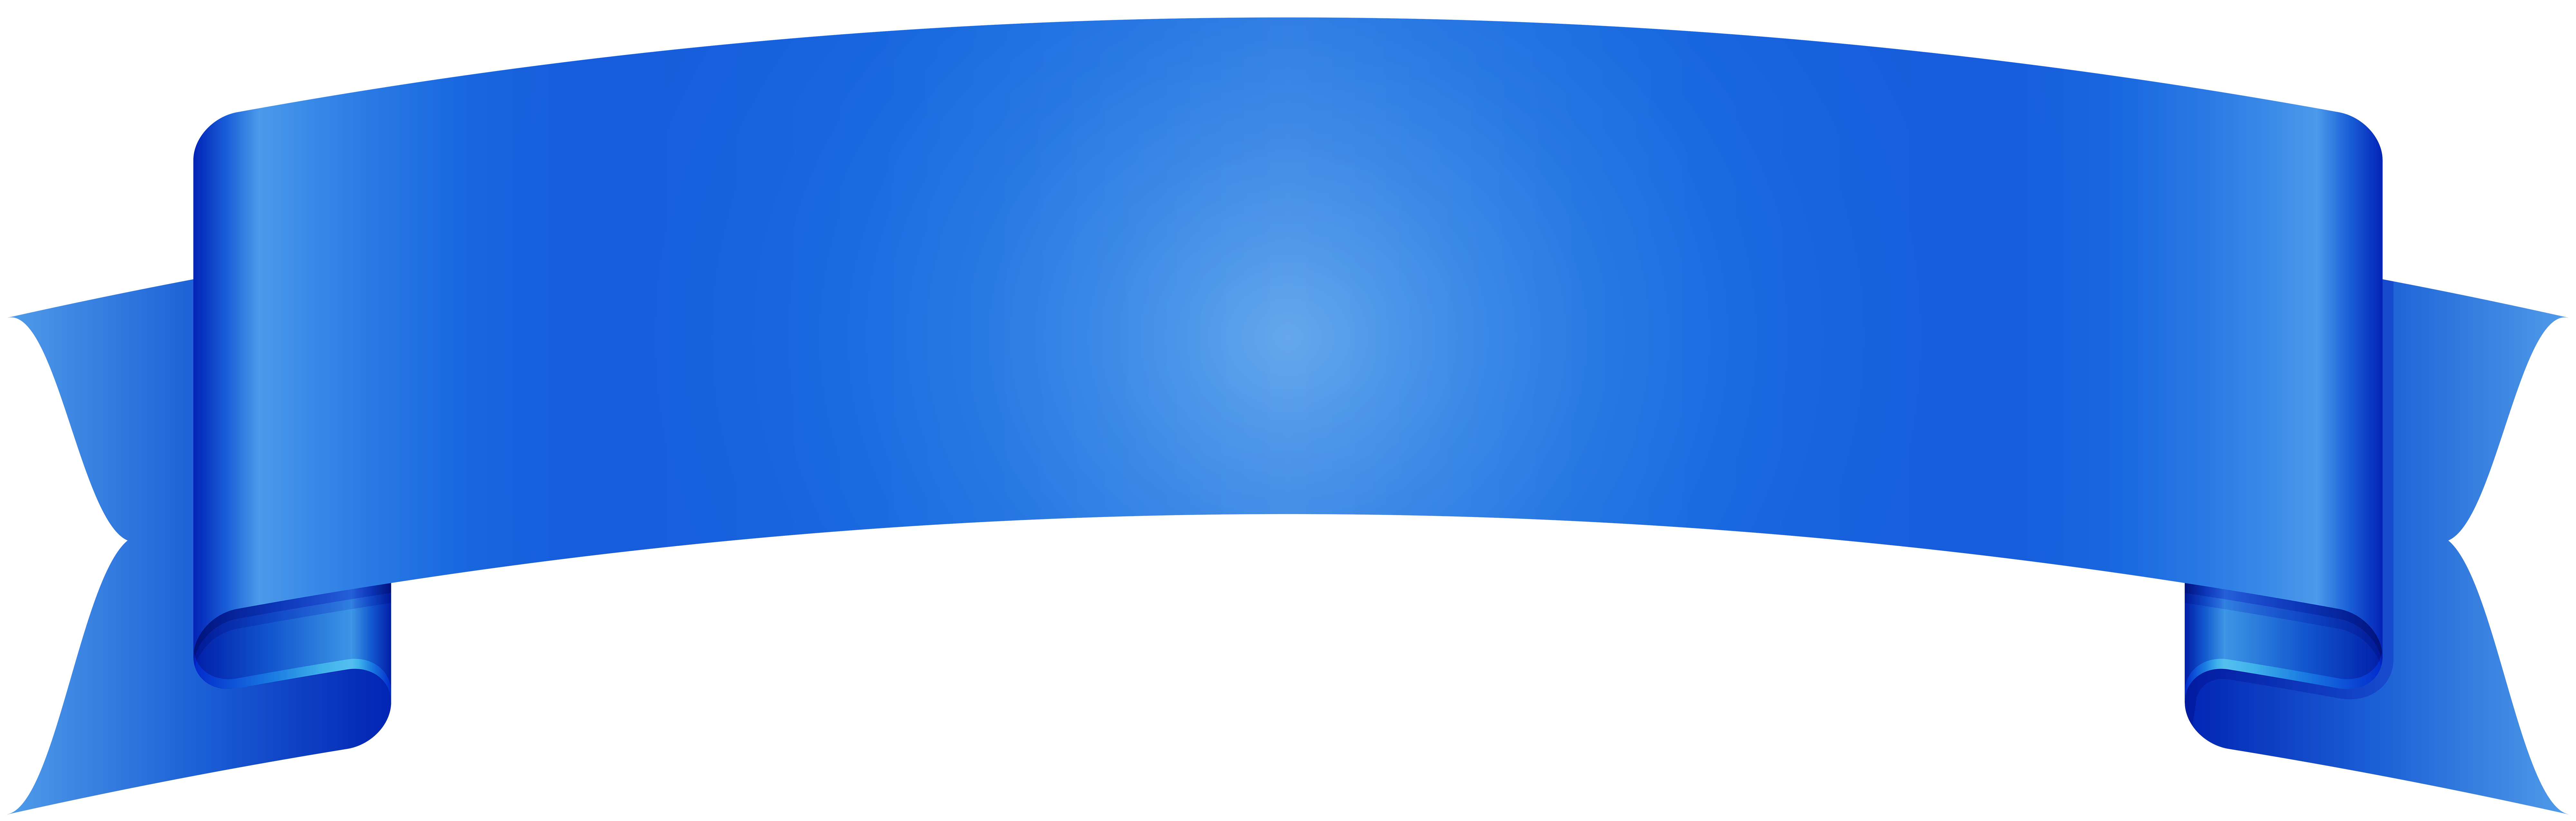 Голубая лента PNG картина